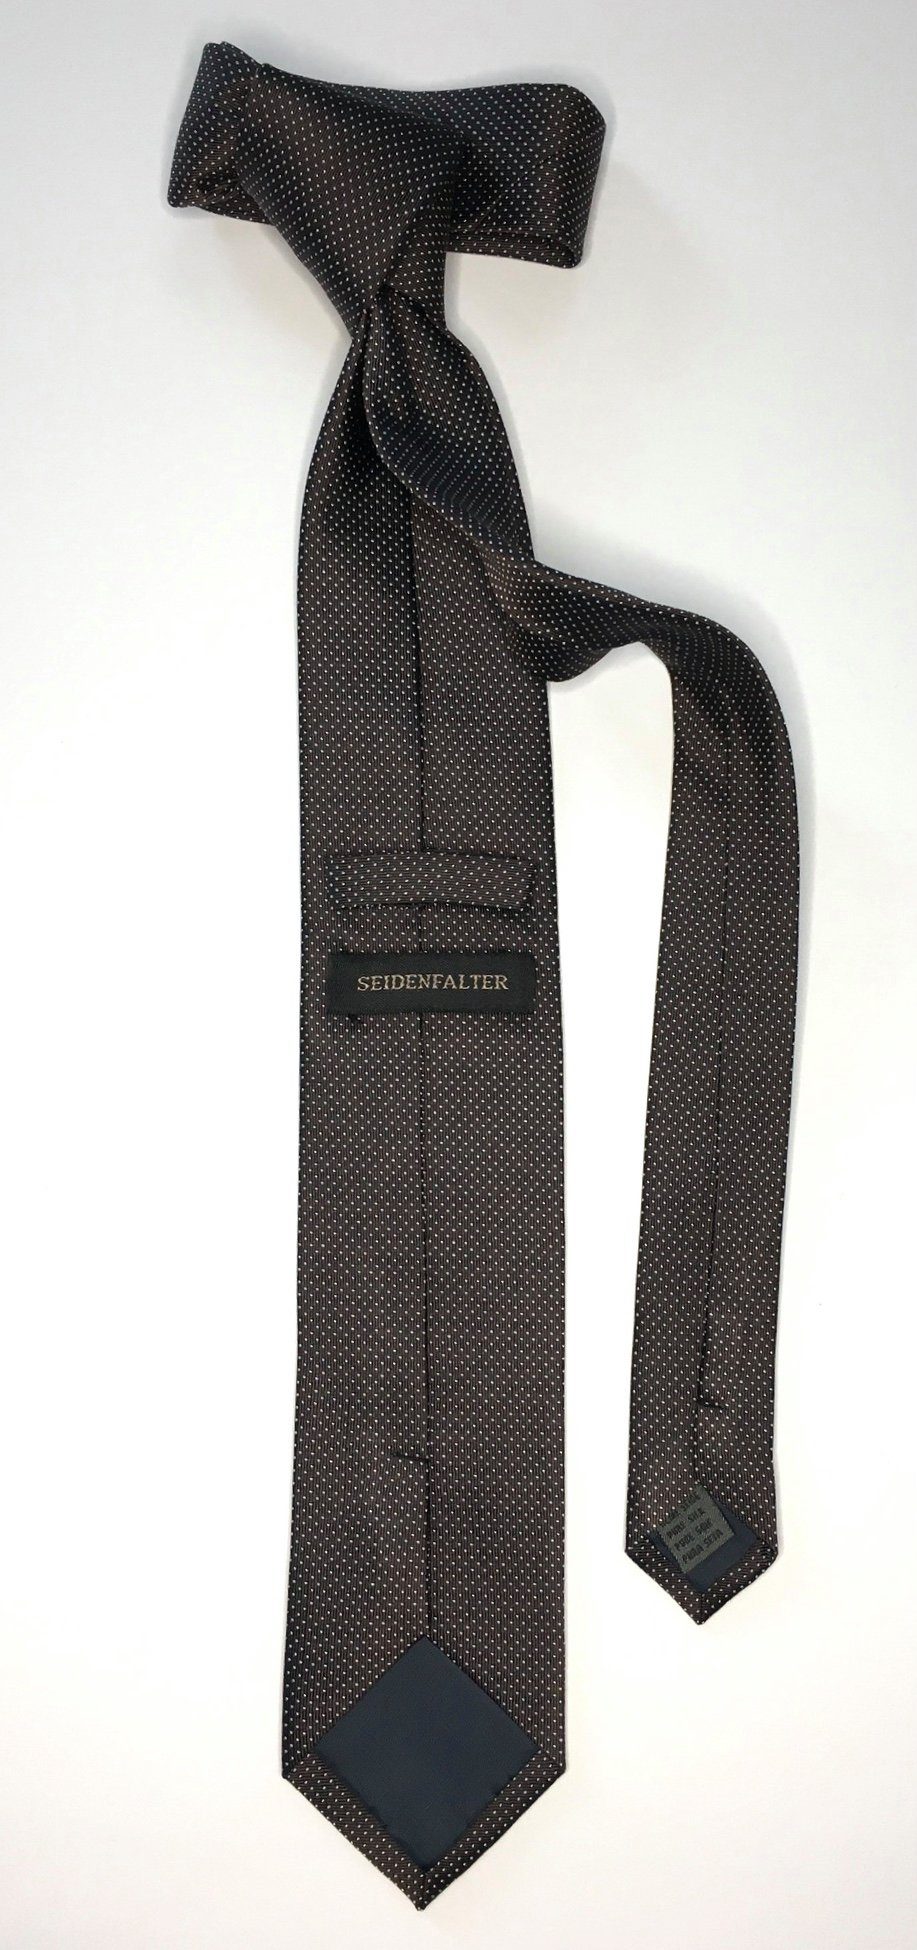 Seidenfalter Krawatte Krawatte edlen Picoté Krawatte Seidenfalter Seidenfalter Design Picoté im 6cm Braun